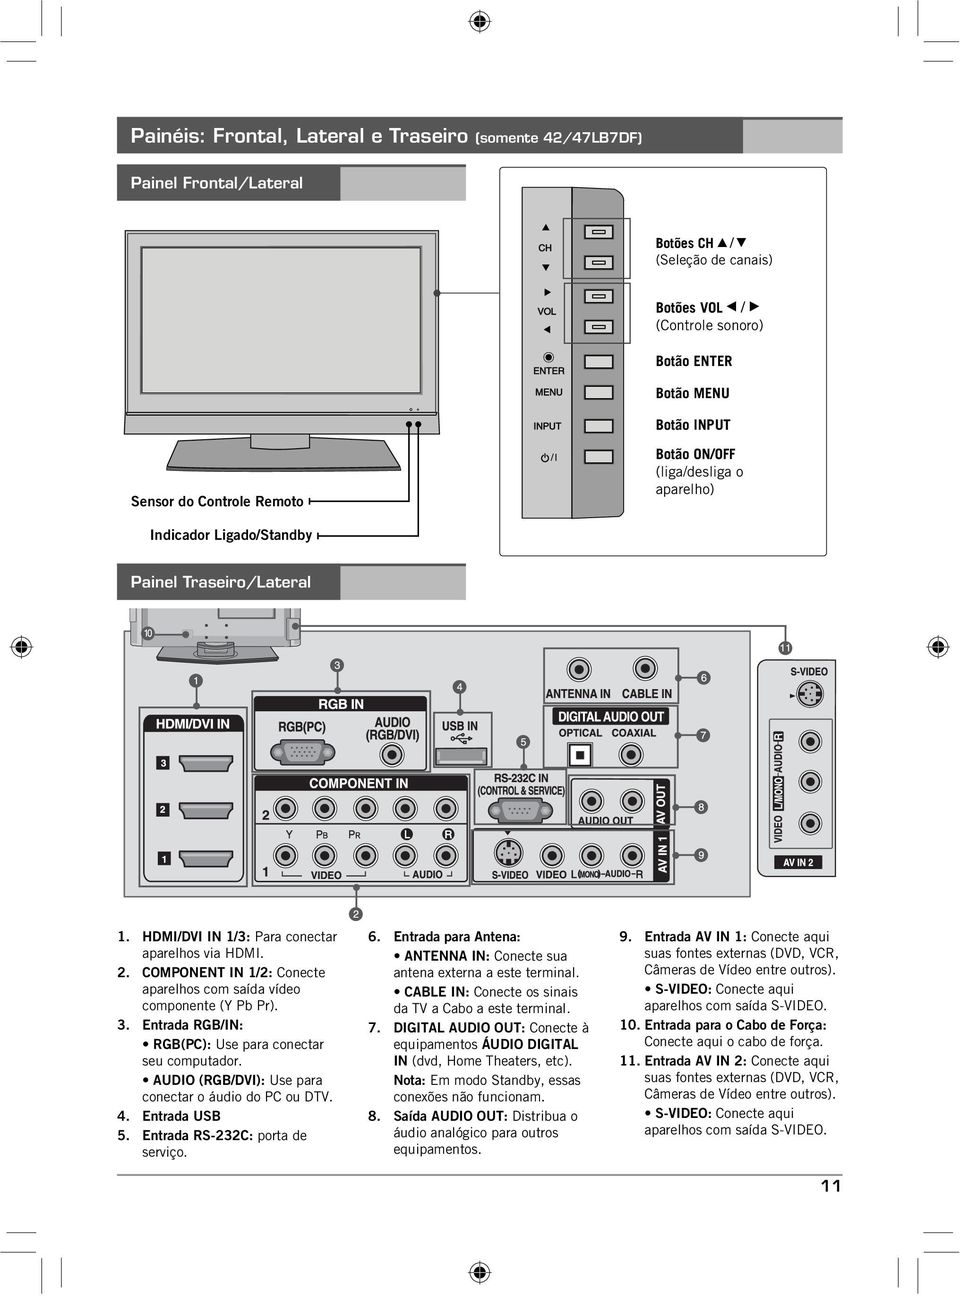 COMPONENT IN /2: Conecte aparelhos com saída vídeo componente (Y Pb Pr). 3. Entrada RGB/IN: RGB(PC): Use para conectar seu computador. AUDIO (RGB/DVI): Use para conectar o áudio do PC ou DTV. 4.